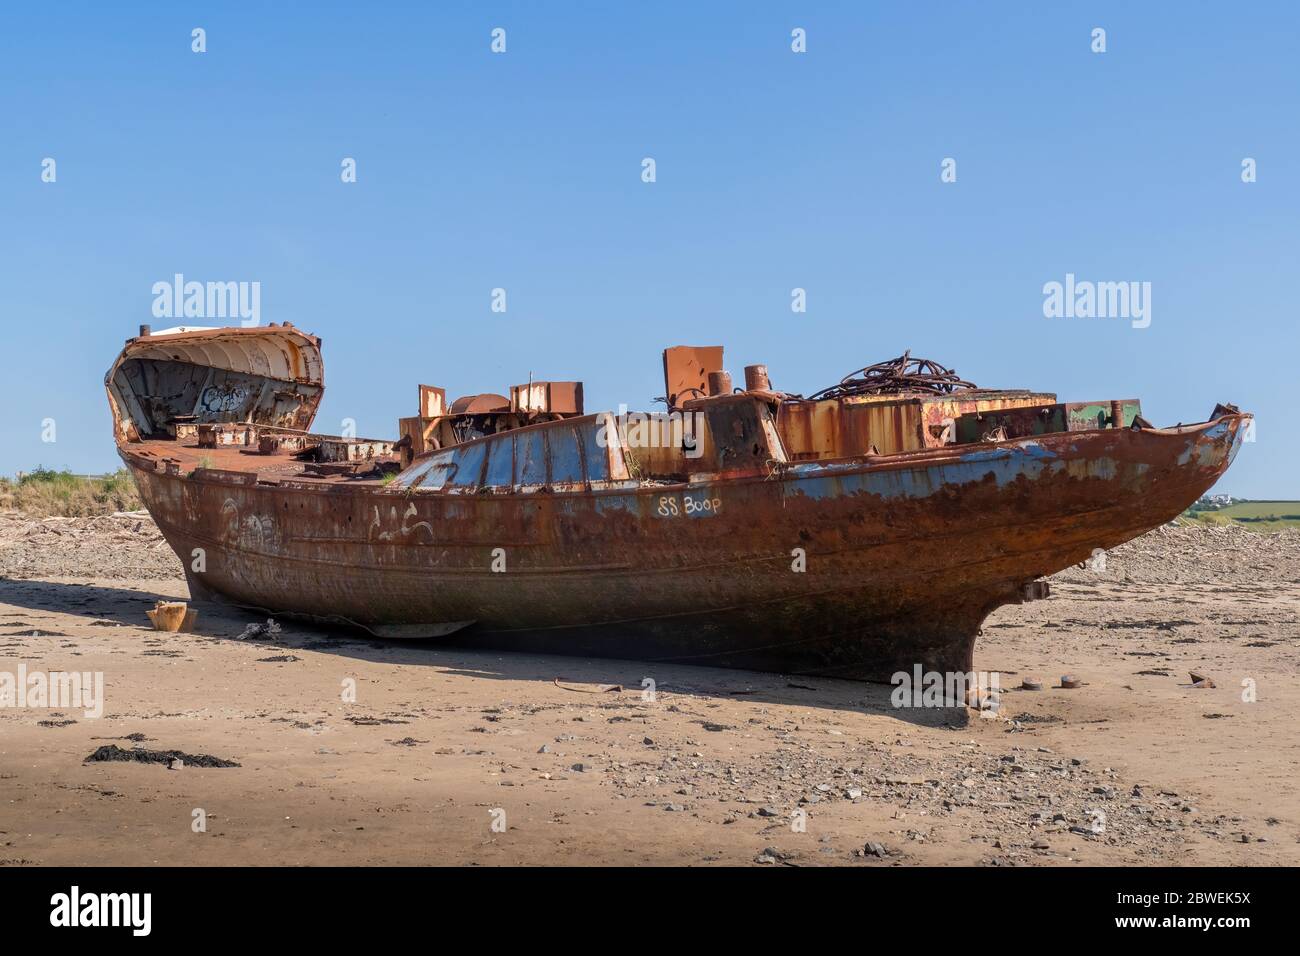 YELLAND, NORTH DEVON, UK - MAGGIO 28 2020: Relitto abbandonato rotto nave, sulla spiaggia sabbiosa. Scafo arrugginente sulla spiaggia. Foto Stock